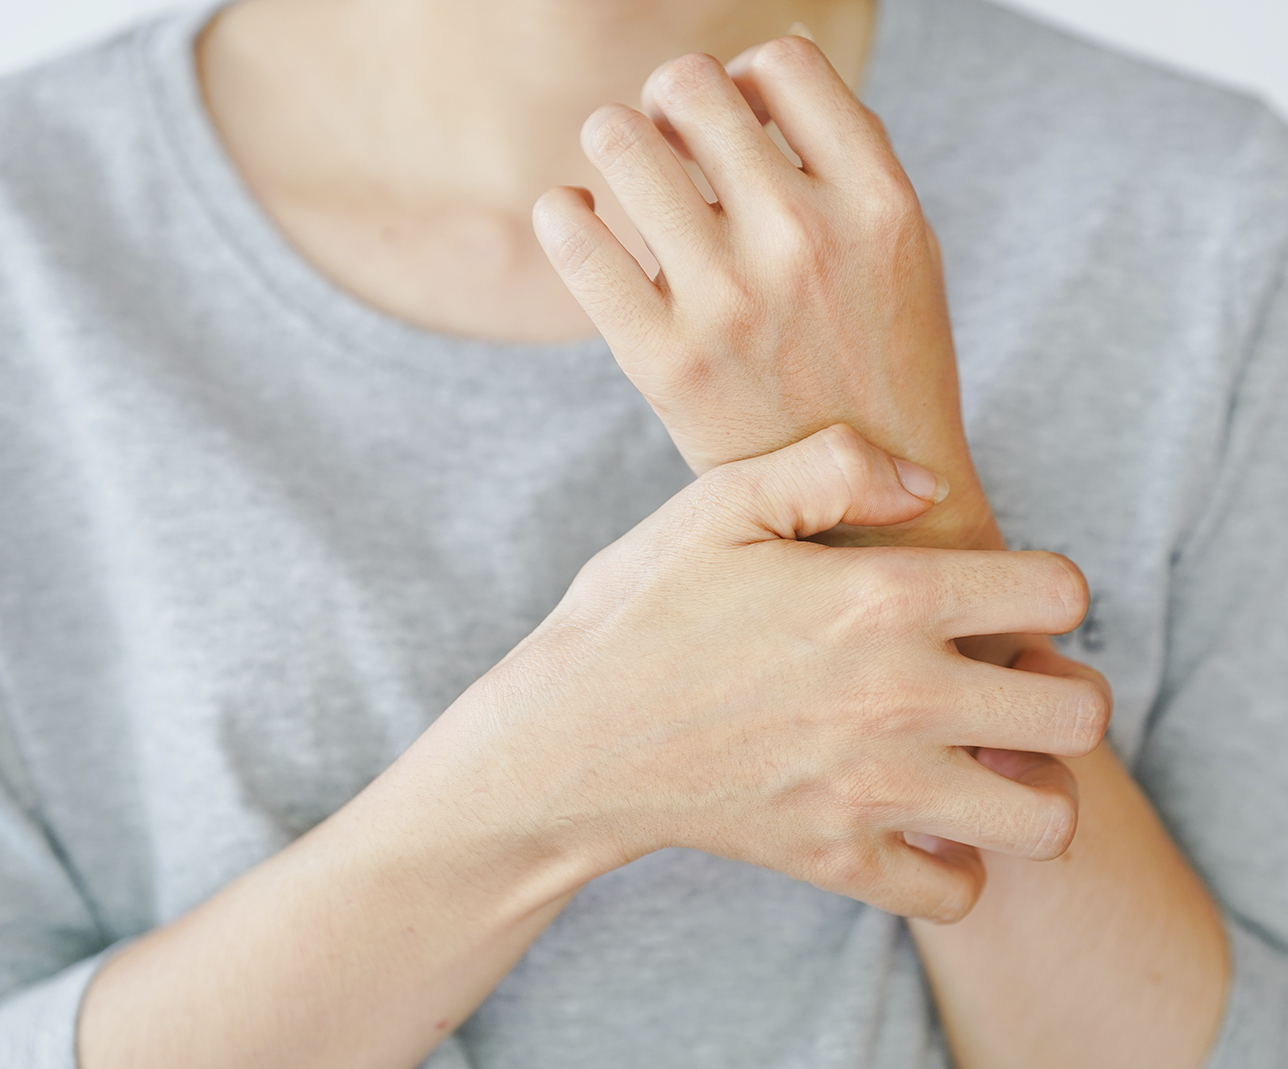 Telas que favorecen la irritación en la piel